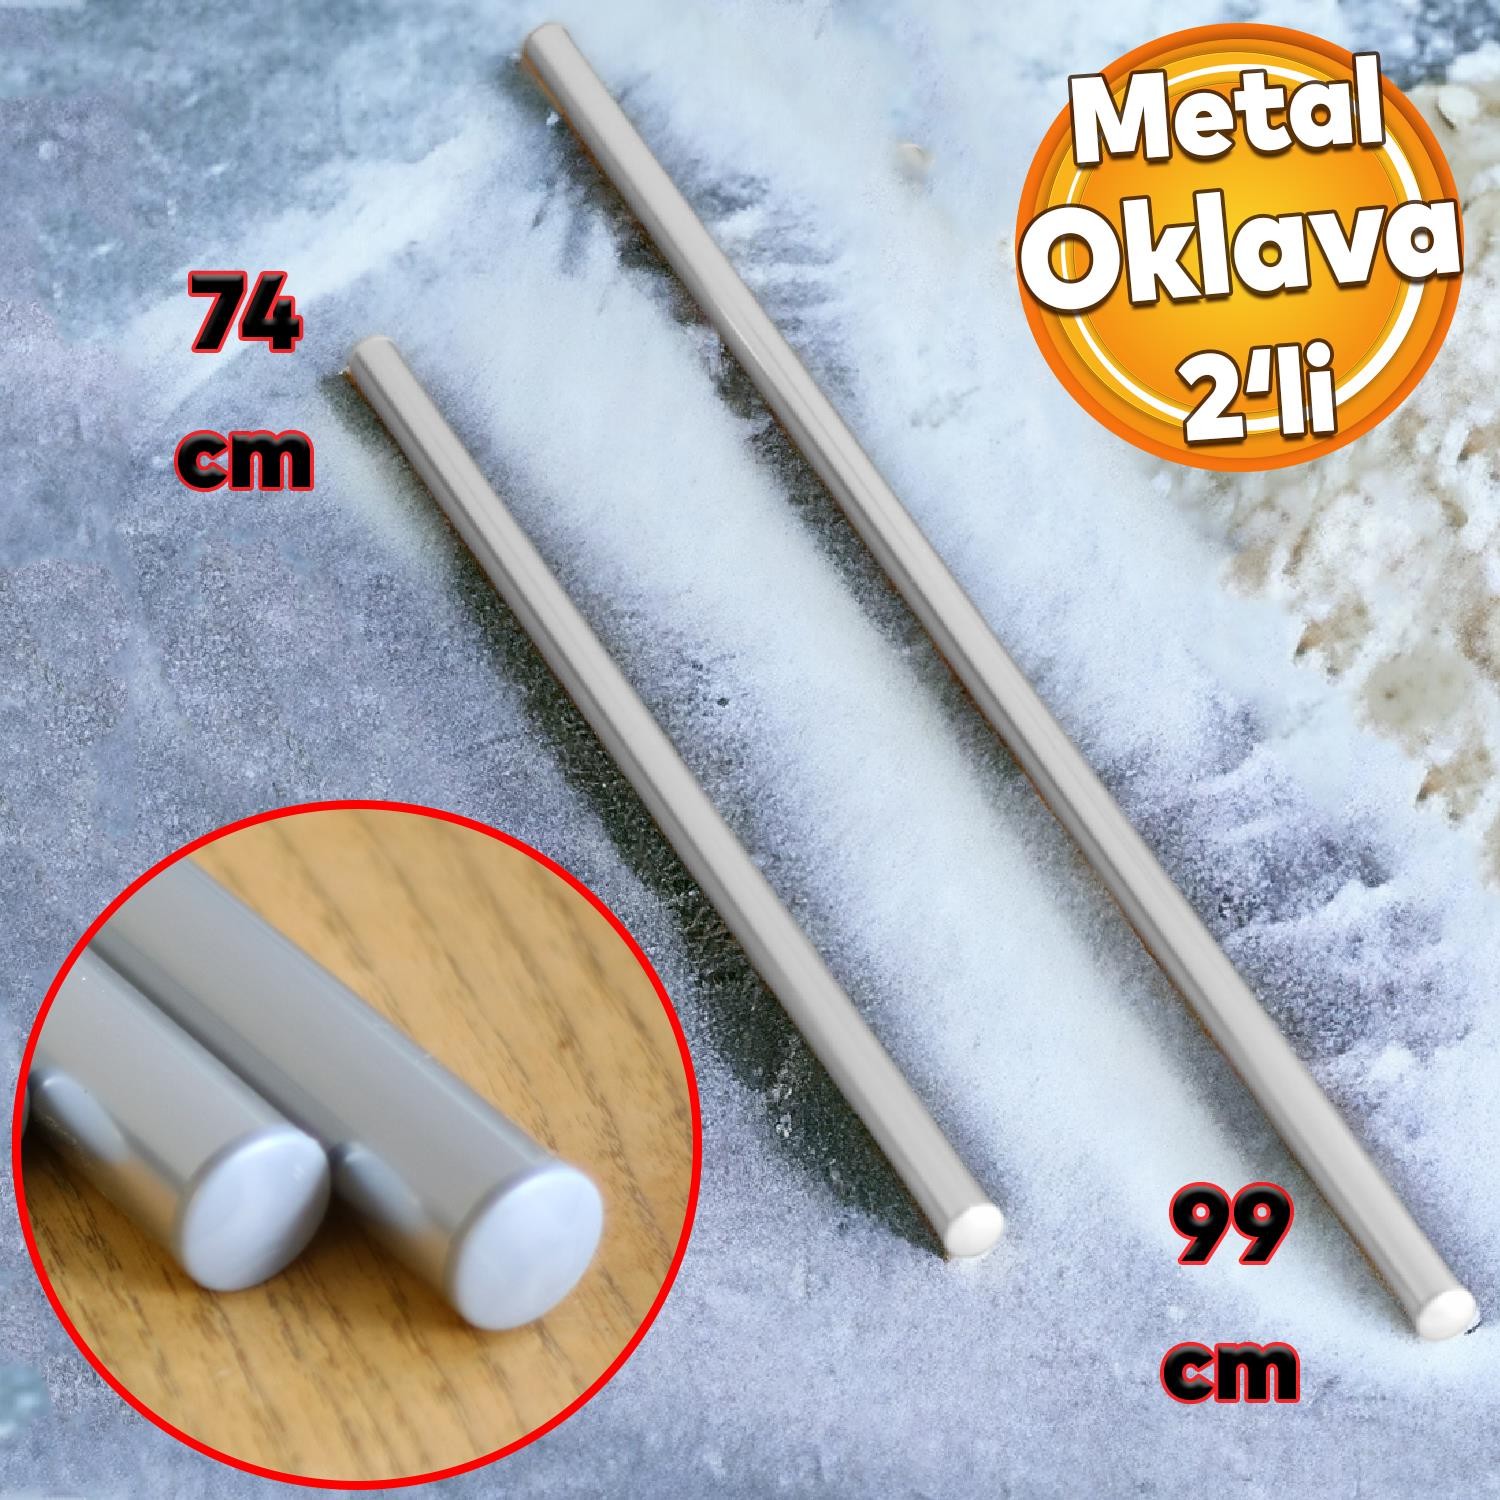 Alüminyum Metal Oklava 2'li Set 99-74 cm Börek Hamur Yufka Açma Silindir Yuvarlak Uzun Kısa Mutfak